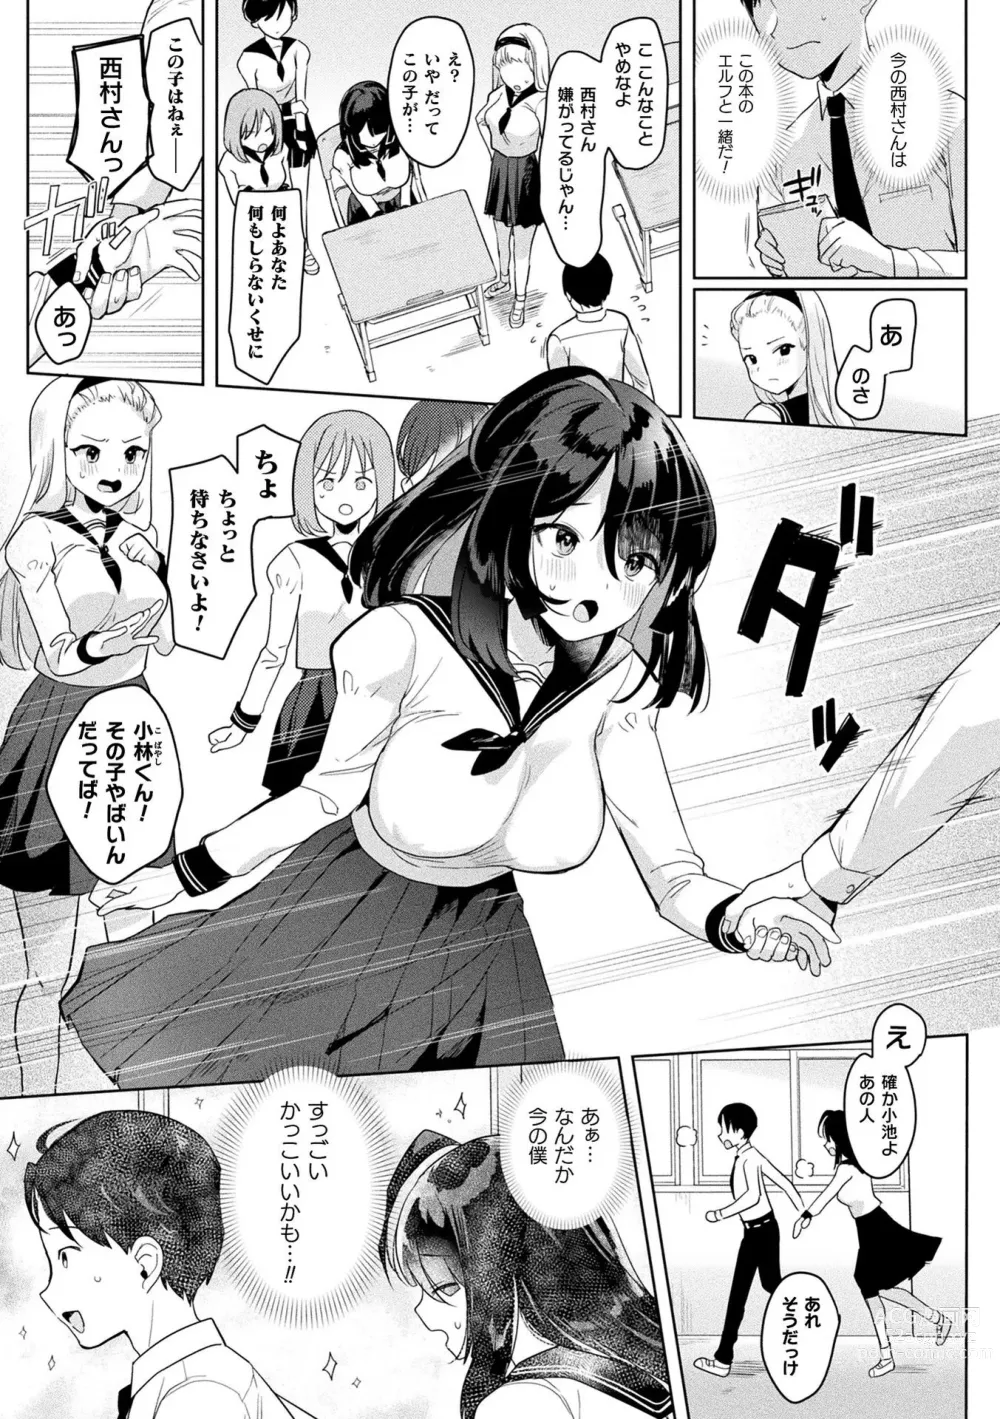 Page 7 of manga Neneki Shoujo -Anata o Tabetai-